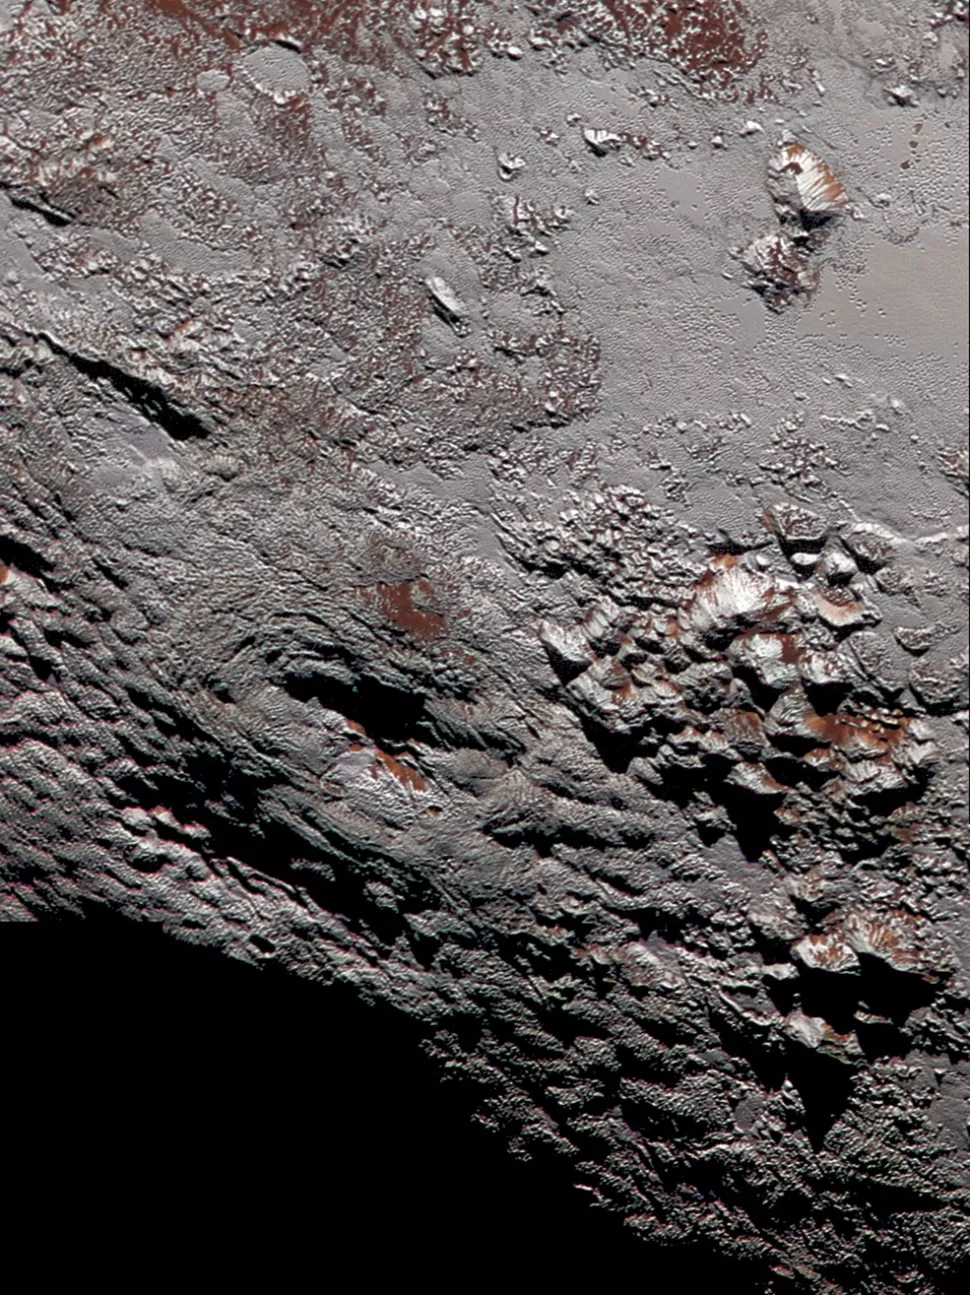 تصاویر واقعی ثبت شده از سیاره کوتوله پلوتو